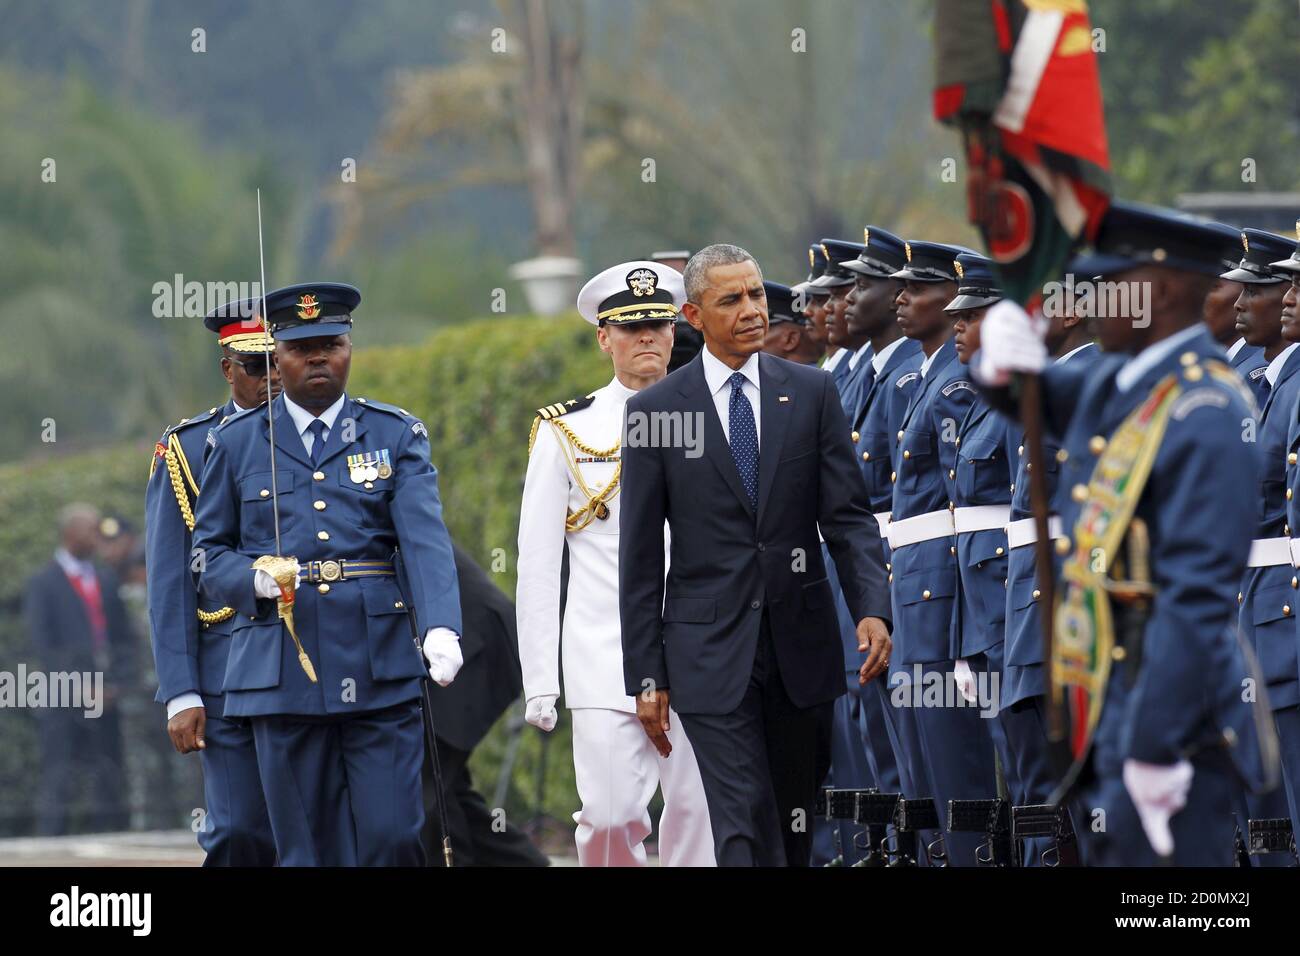 Le président américain Barack Obama examine une garde d'honneur des Forces de défense du Kenya lors d'une visite à la Maison d'État, dans la capitale du Kenya, Nairobi, le 25 juillet 2015. REUTERS/Thomas Mukoya Banque D'Images